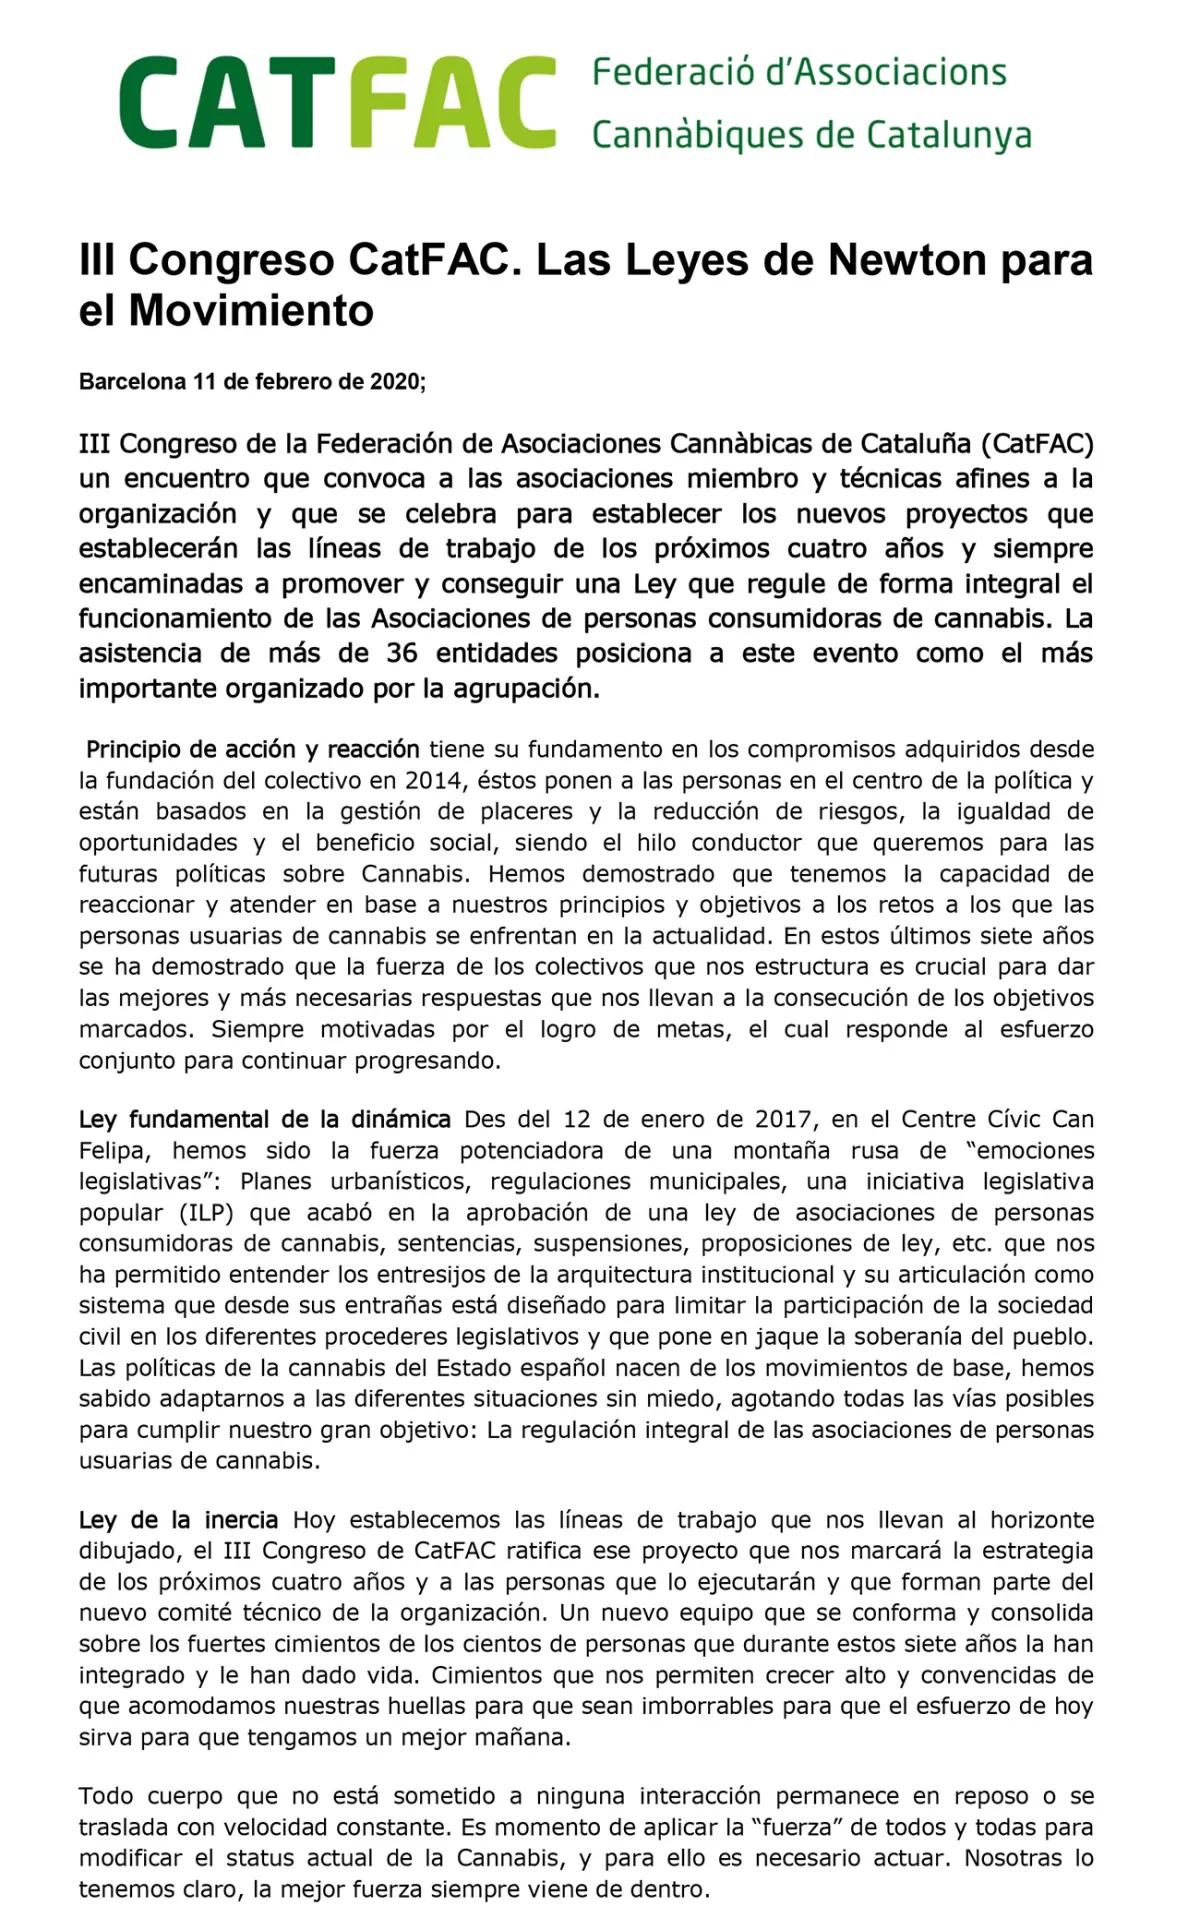 La federación de asociaciones catalanas CatFac celebra su III Congreso